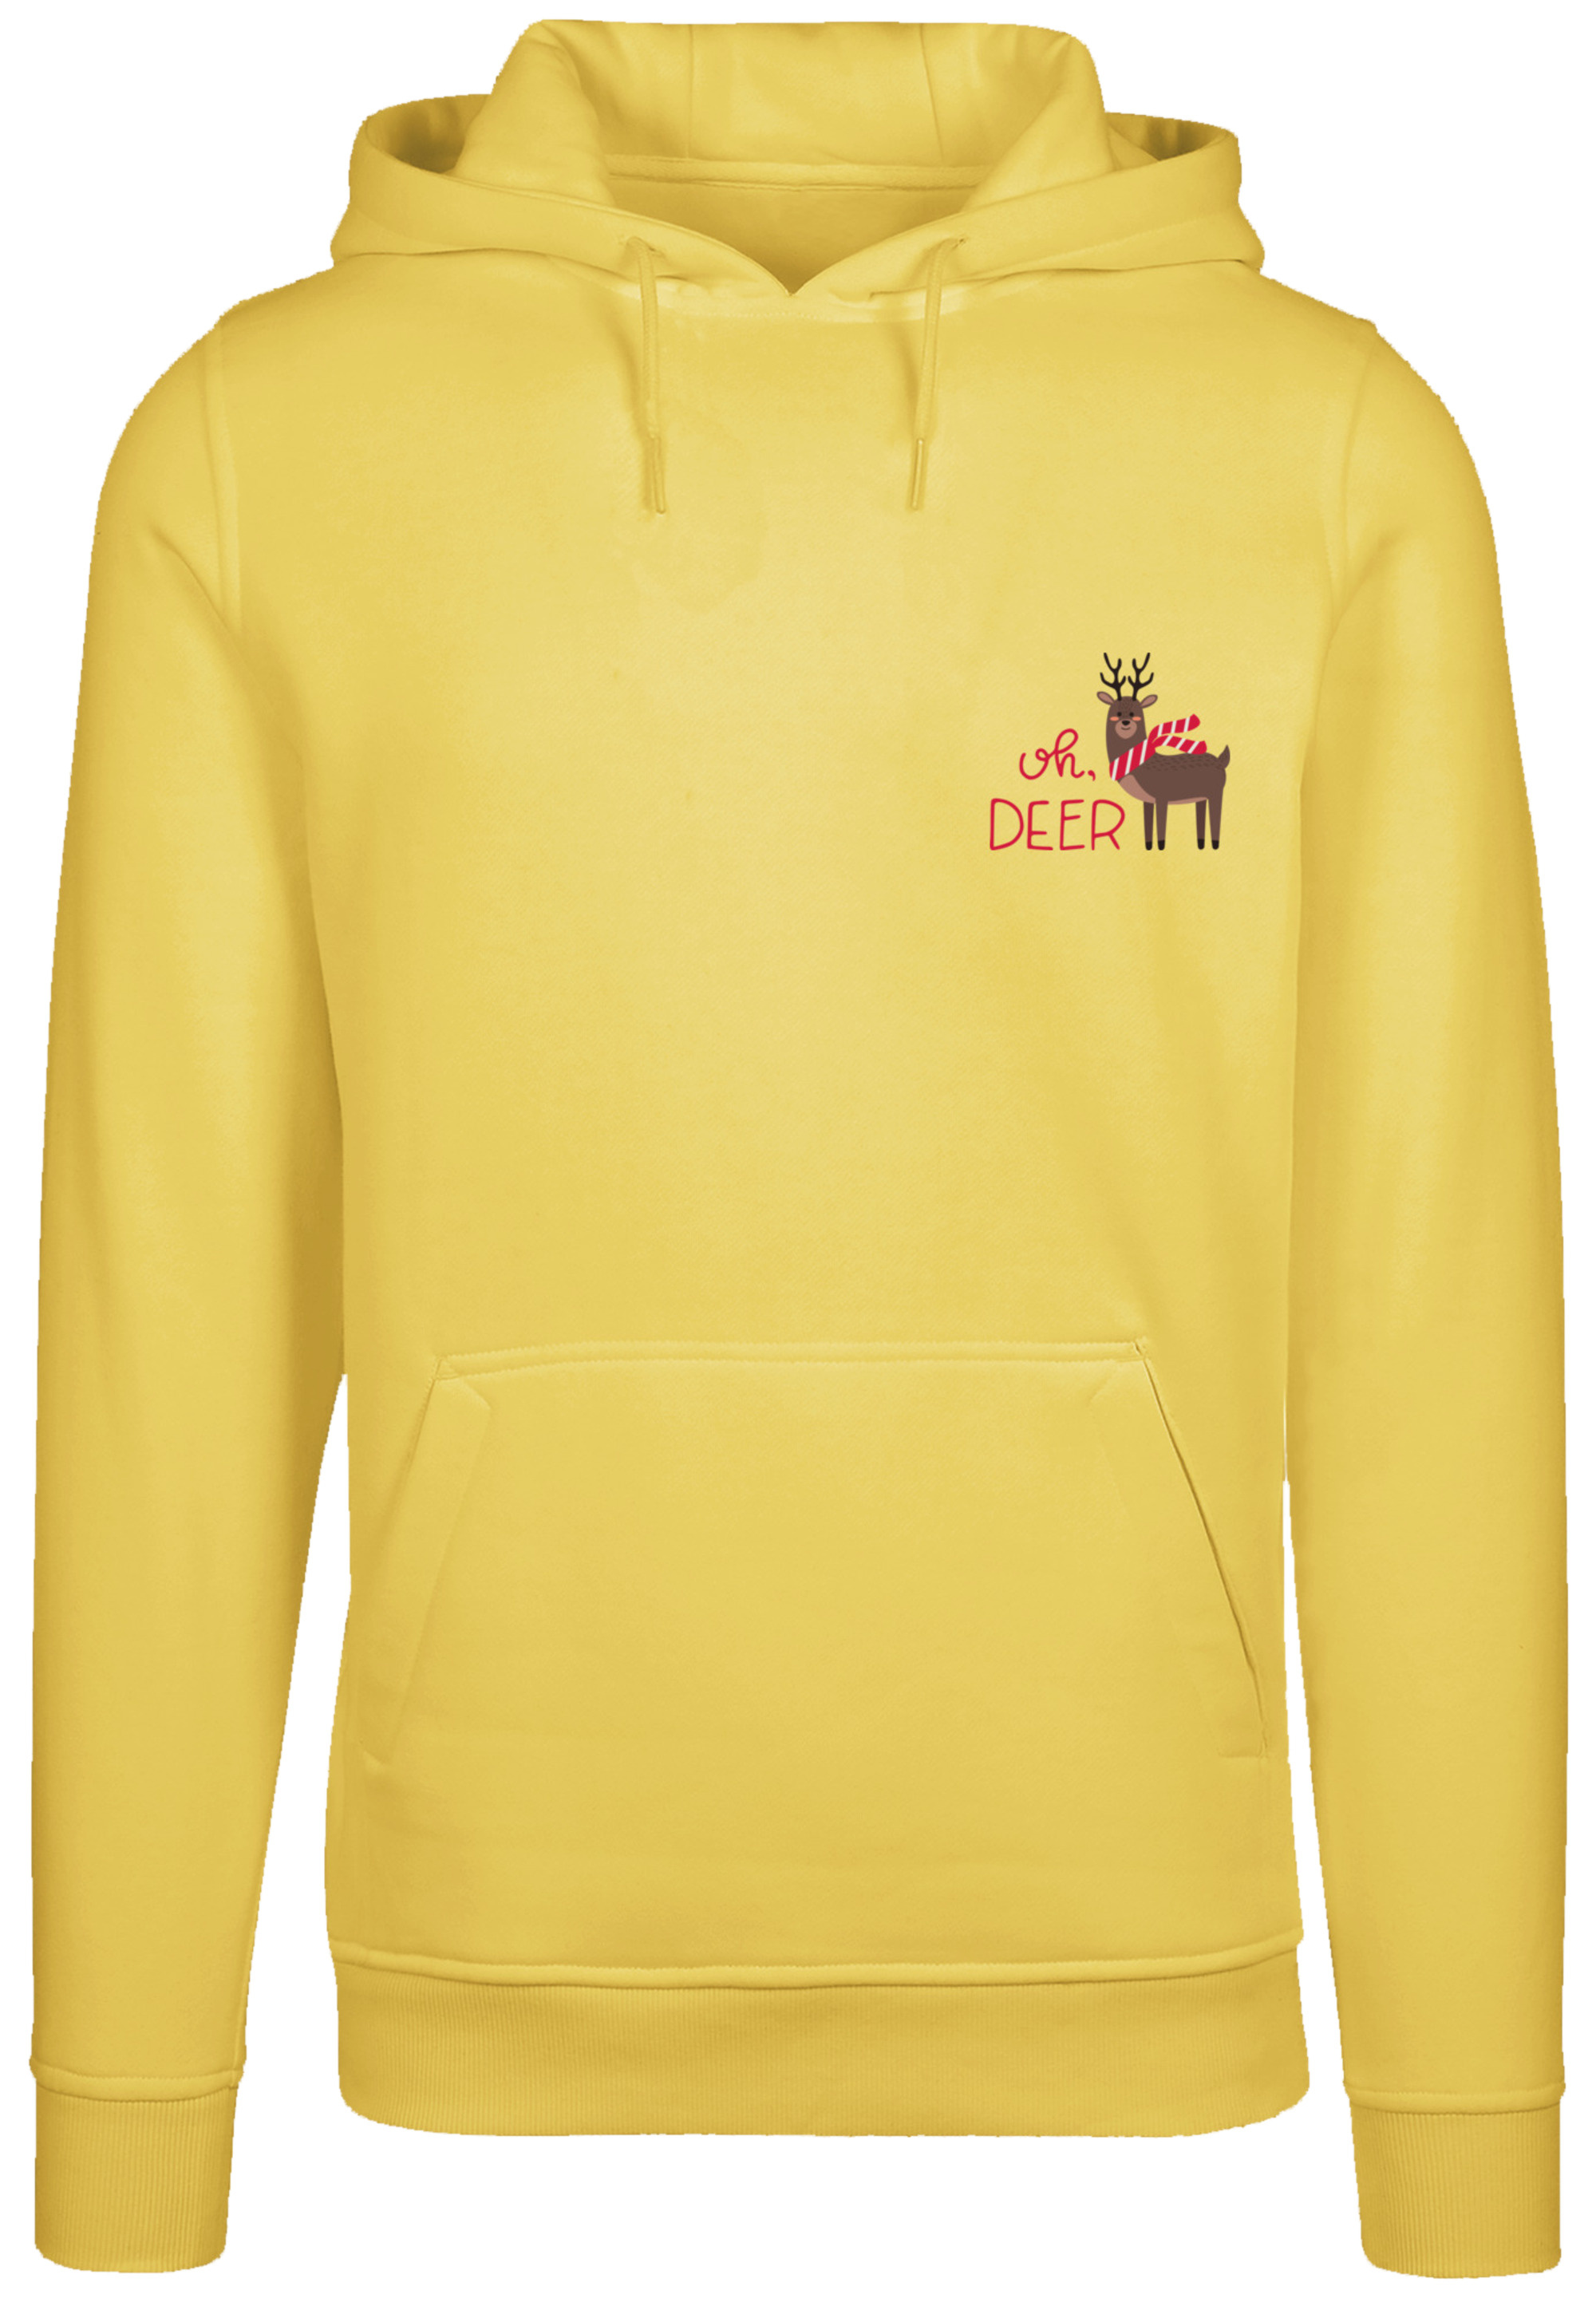 Пуловер F4NT4STIC Hoodie Christmas Deer, цвет taxi yellow